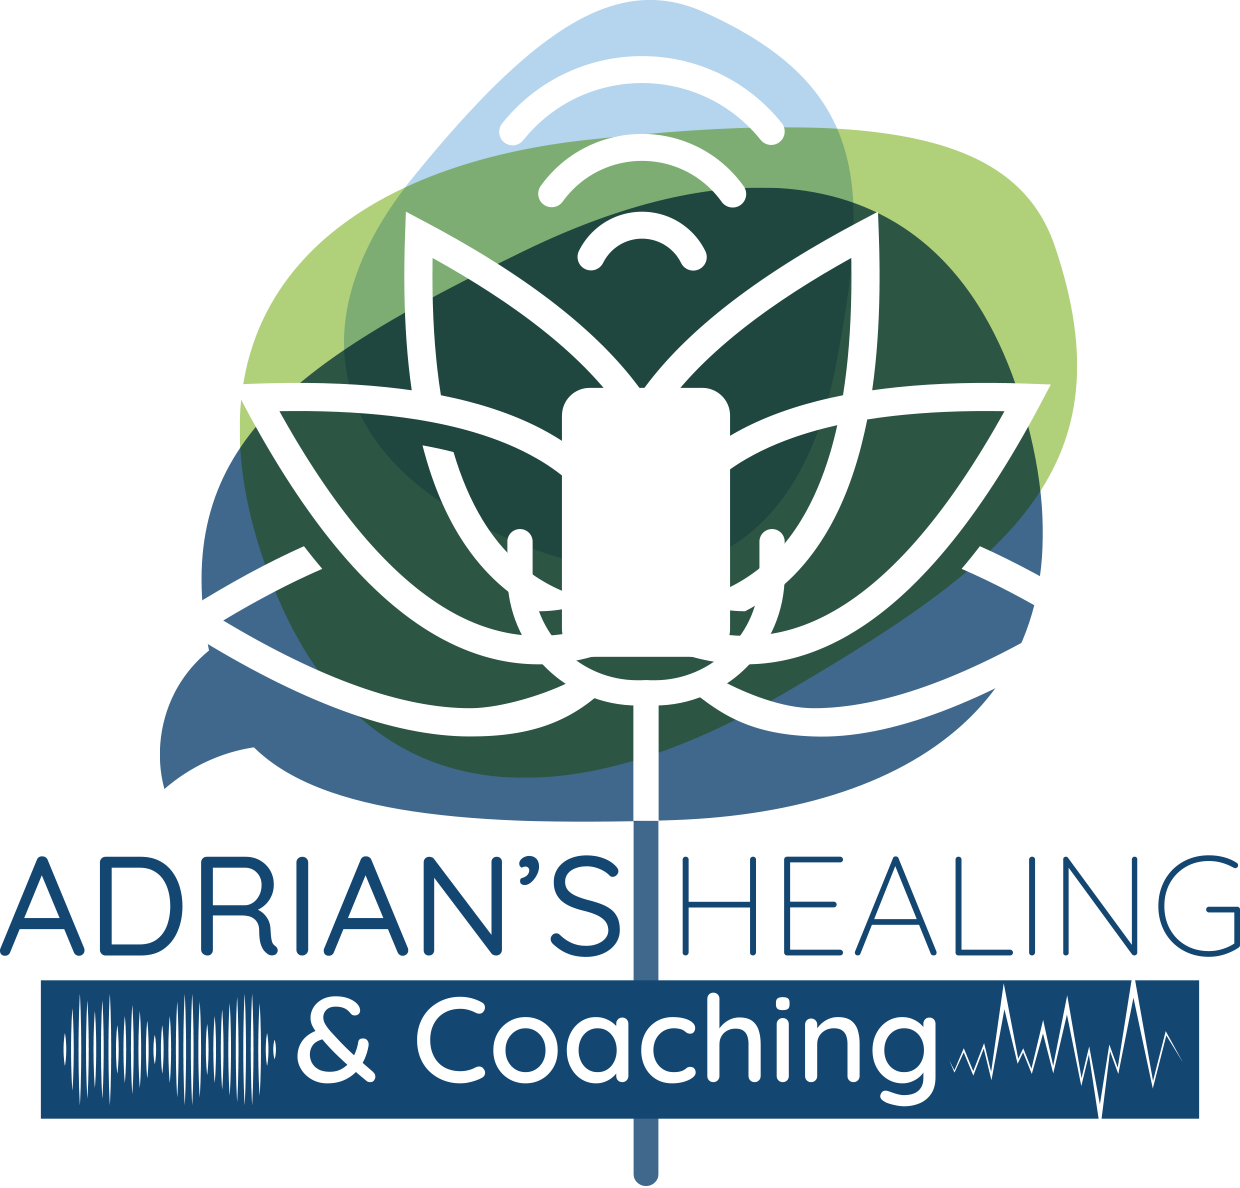 Adrian's Healing & Coaching